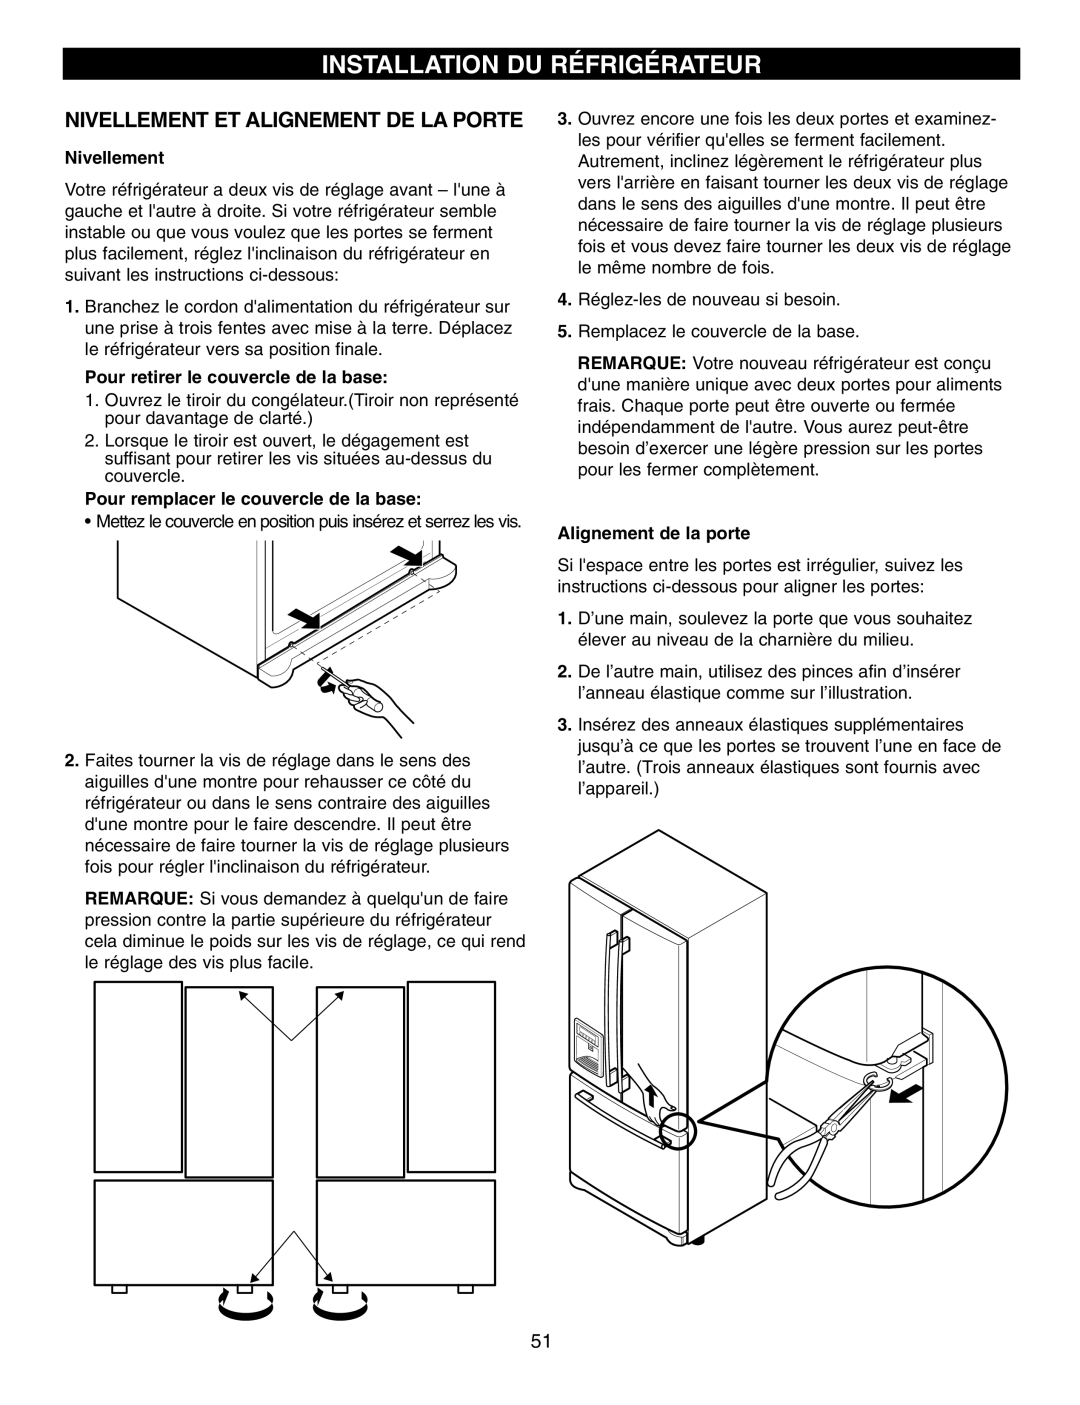 LG Electronics LFX25960 manual Installation Du Réfrigérateur, Nivellement Et Alignement De La Porte, Alignement de la porte 